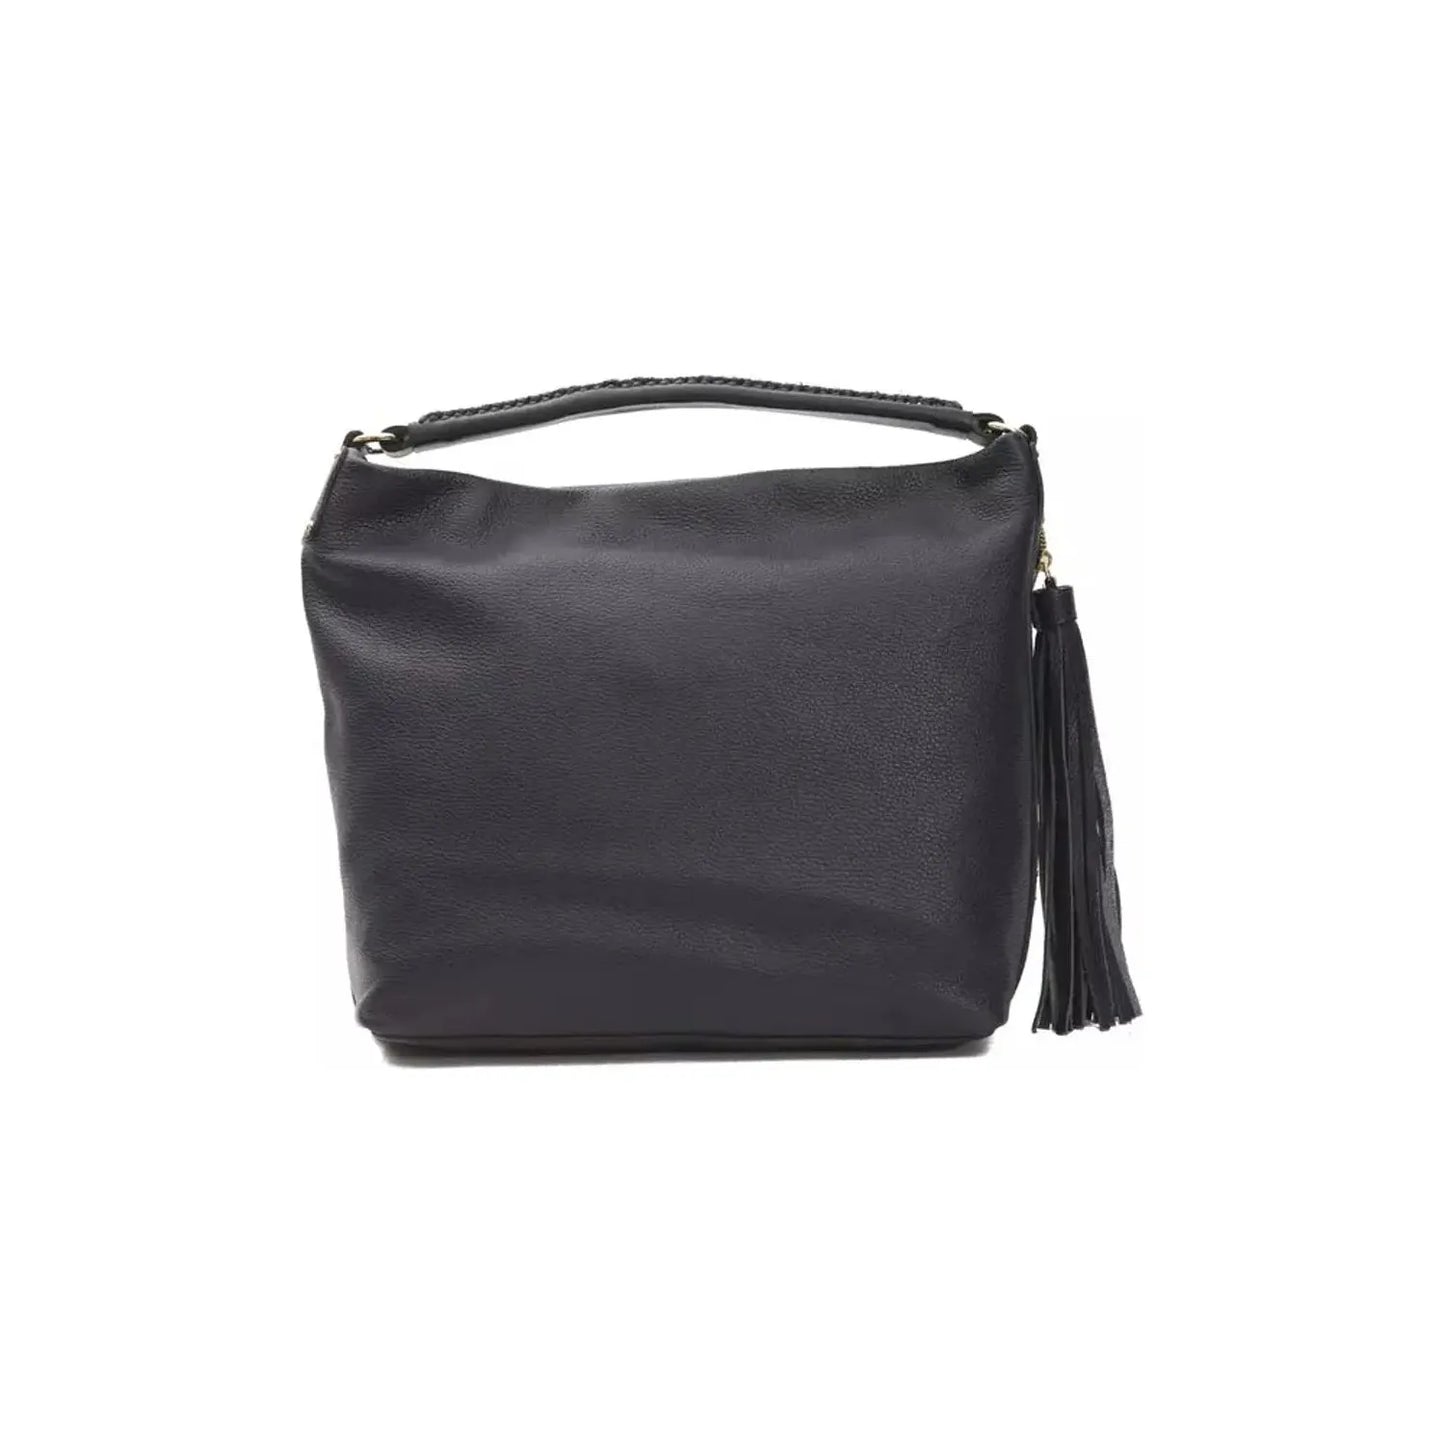 Pompei Donatella Chic Gray Leather Shoulder Bag with Logo Detail WOMAN SHOULDER BAGS gray-leather-shoulder-bag-3